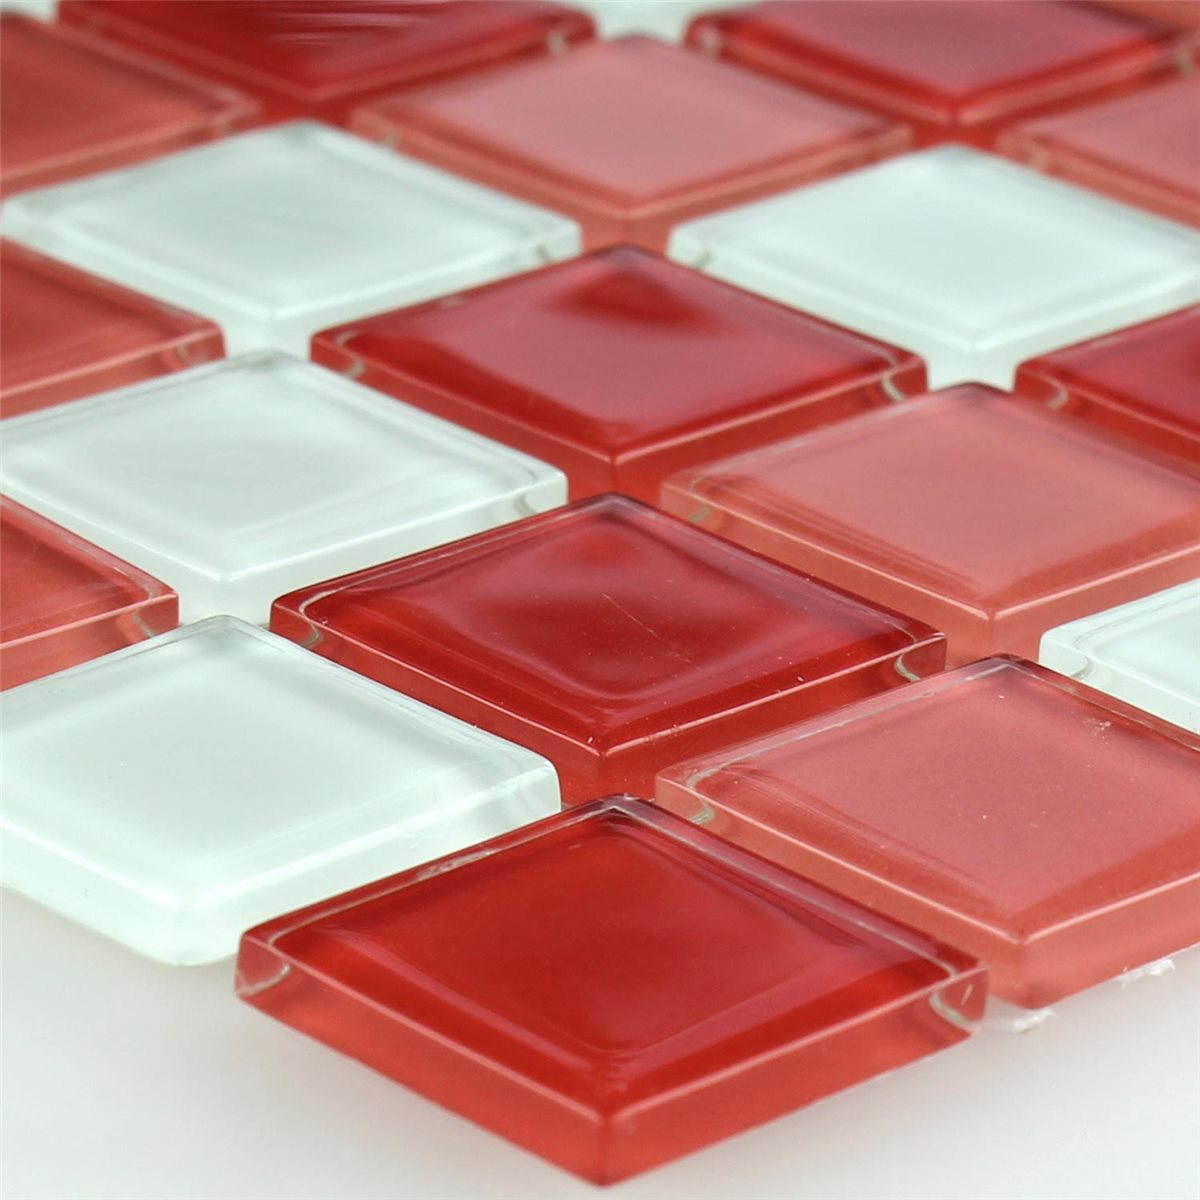 Muster von Glasmosaik Fliesen Kozarica Weiss Rot Mix